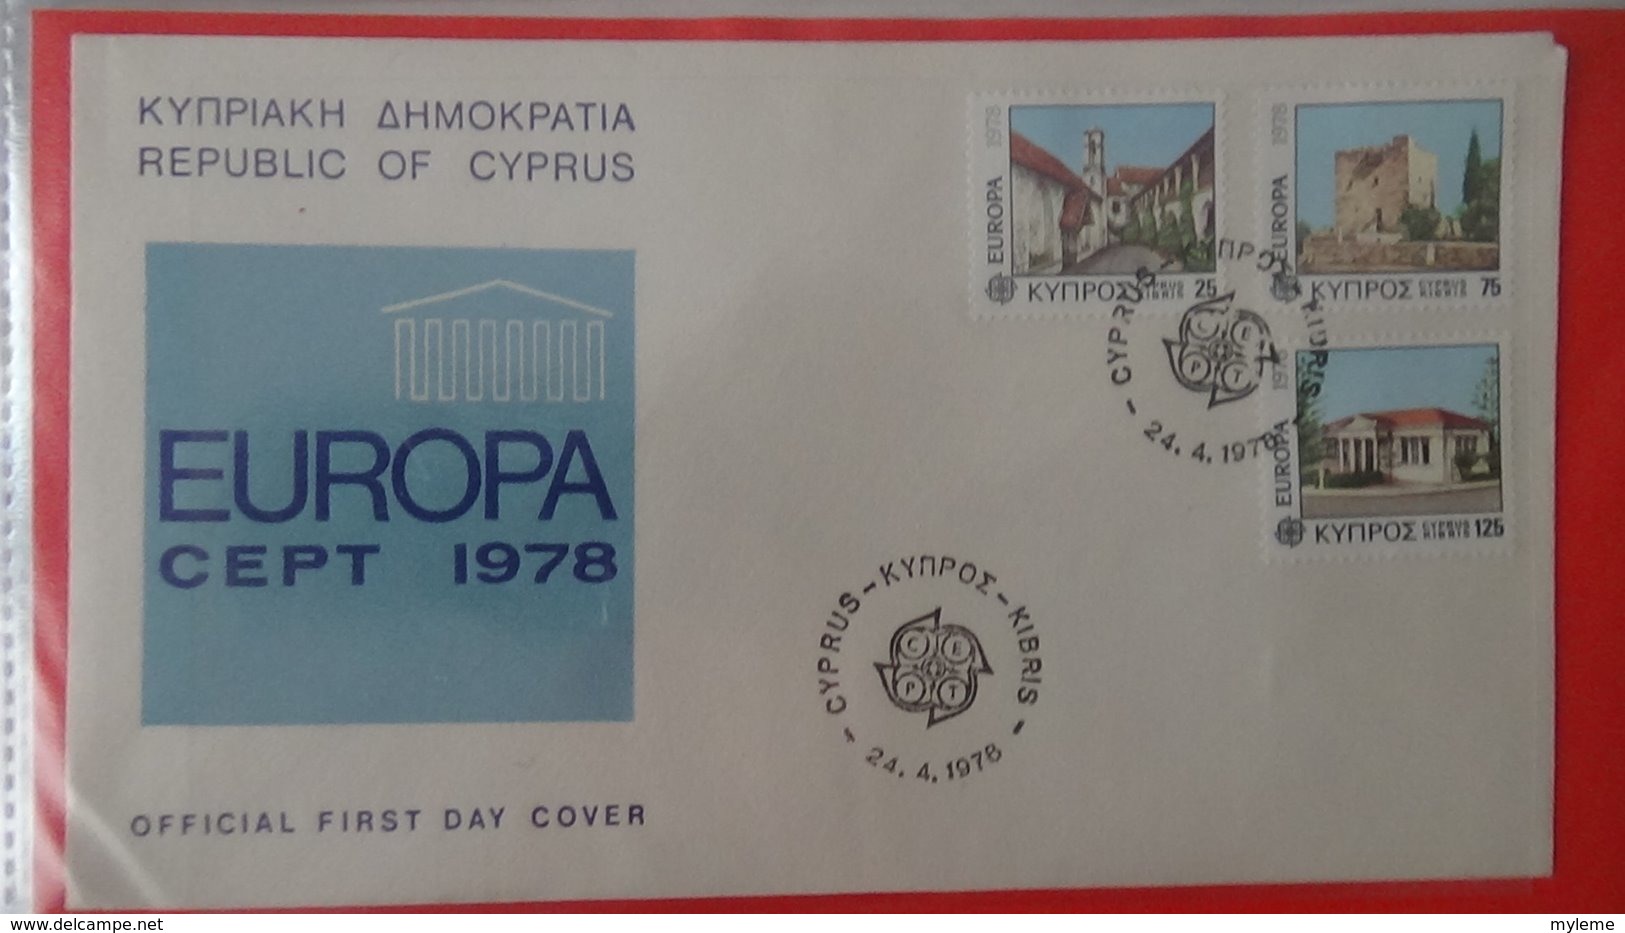 Dispersion d'une collection d'enveloppe 1er jour et autres dont 137 sur le thème EUROPA